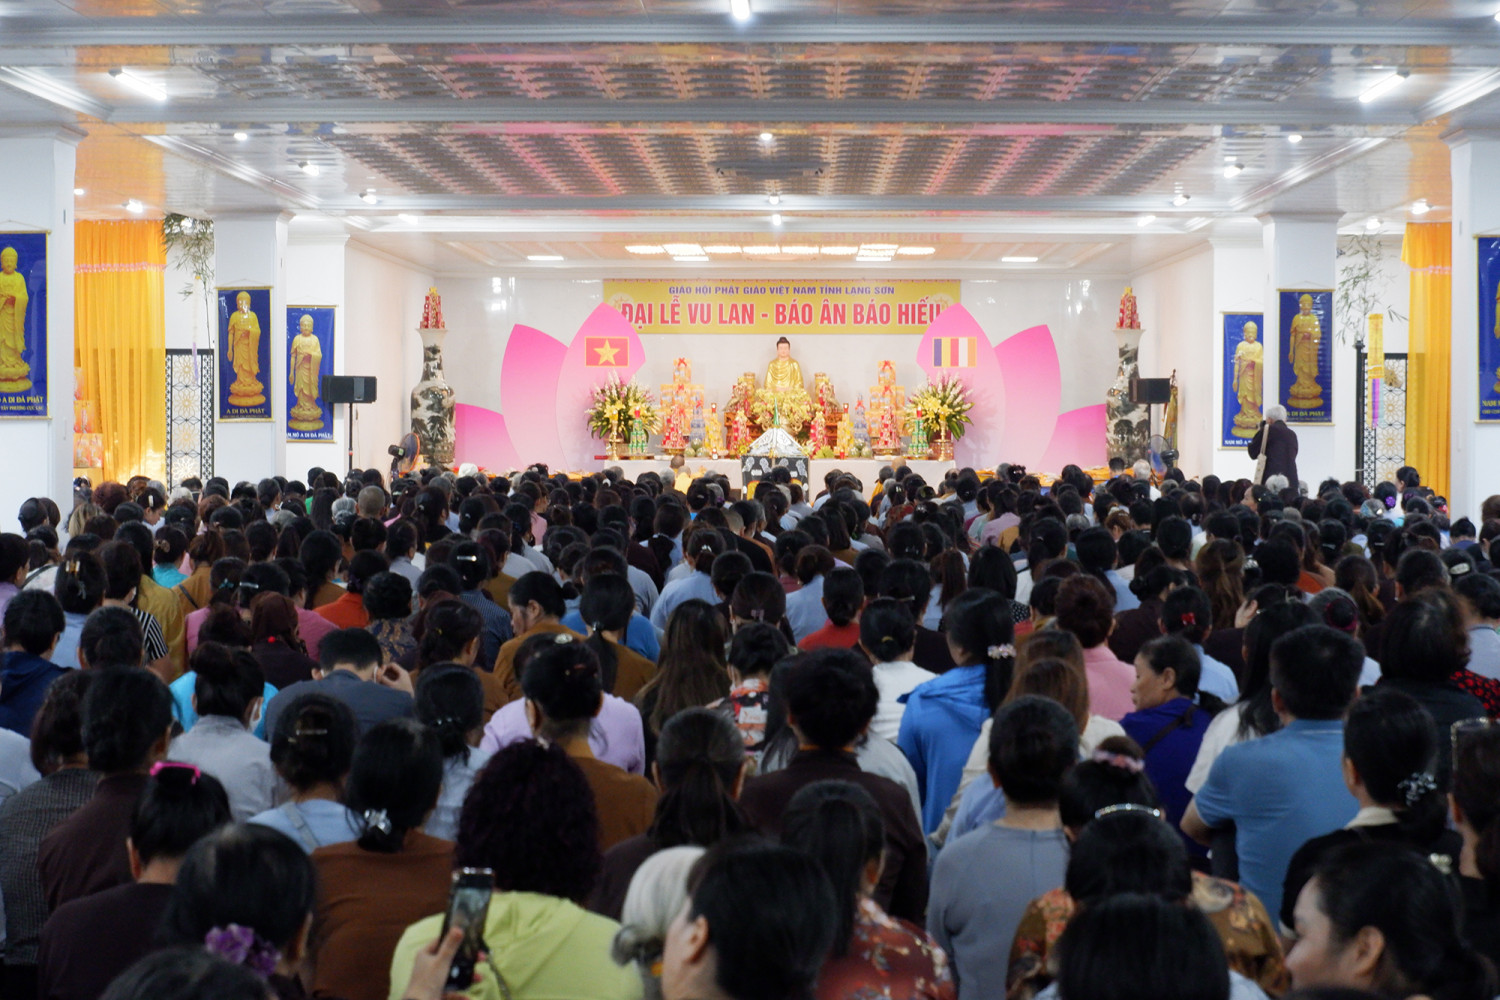 Lạng Sơn: Hơn 3.000 người tham dự Đại lễ Vu Lan tại chùa Thành